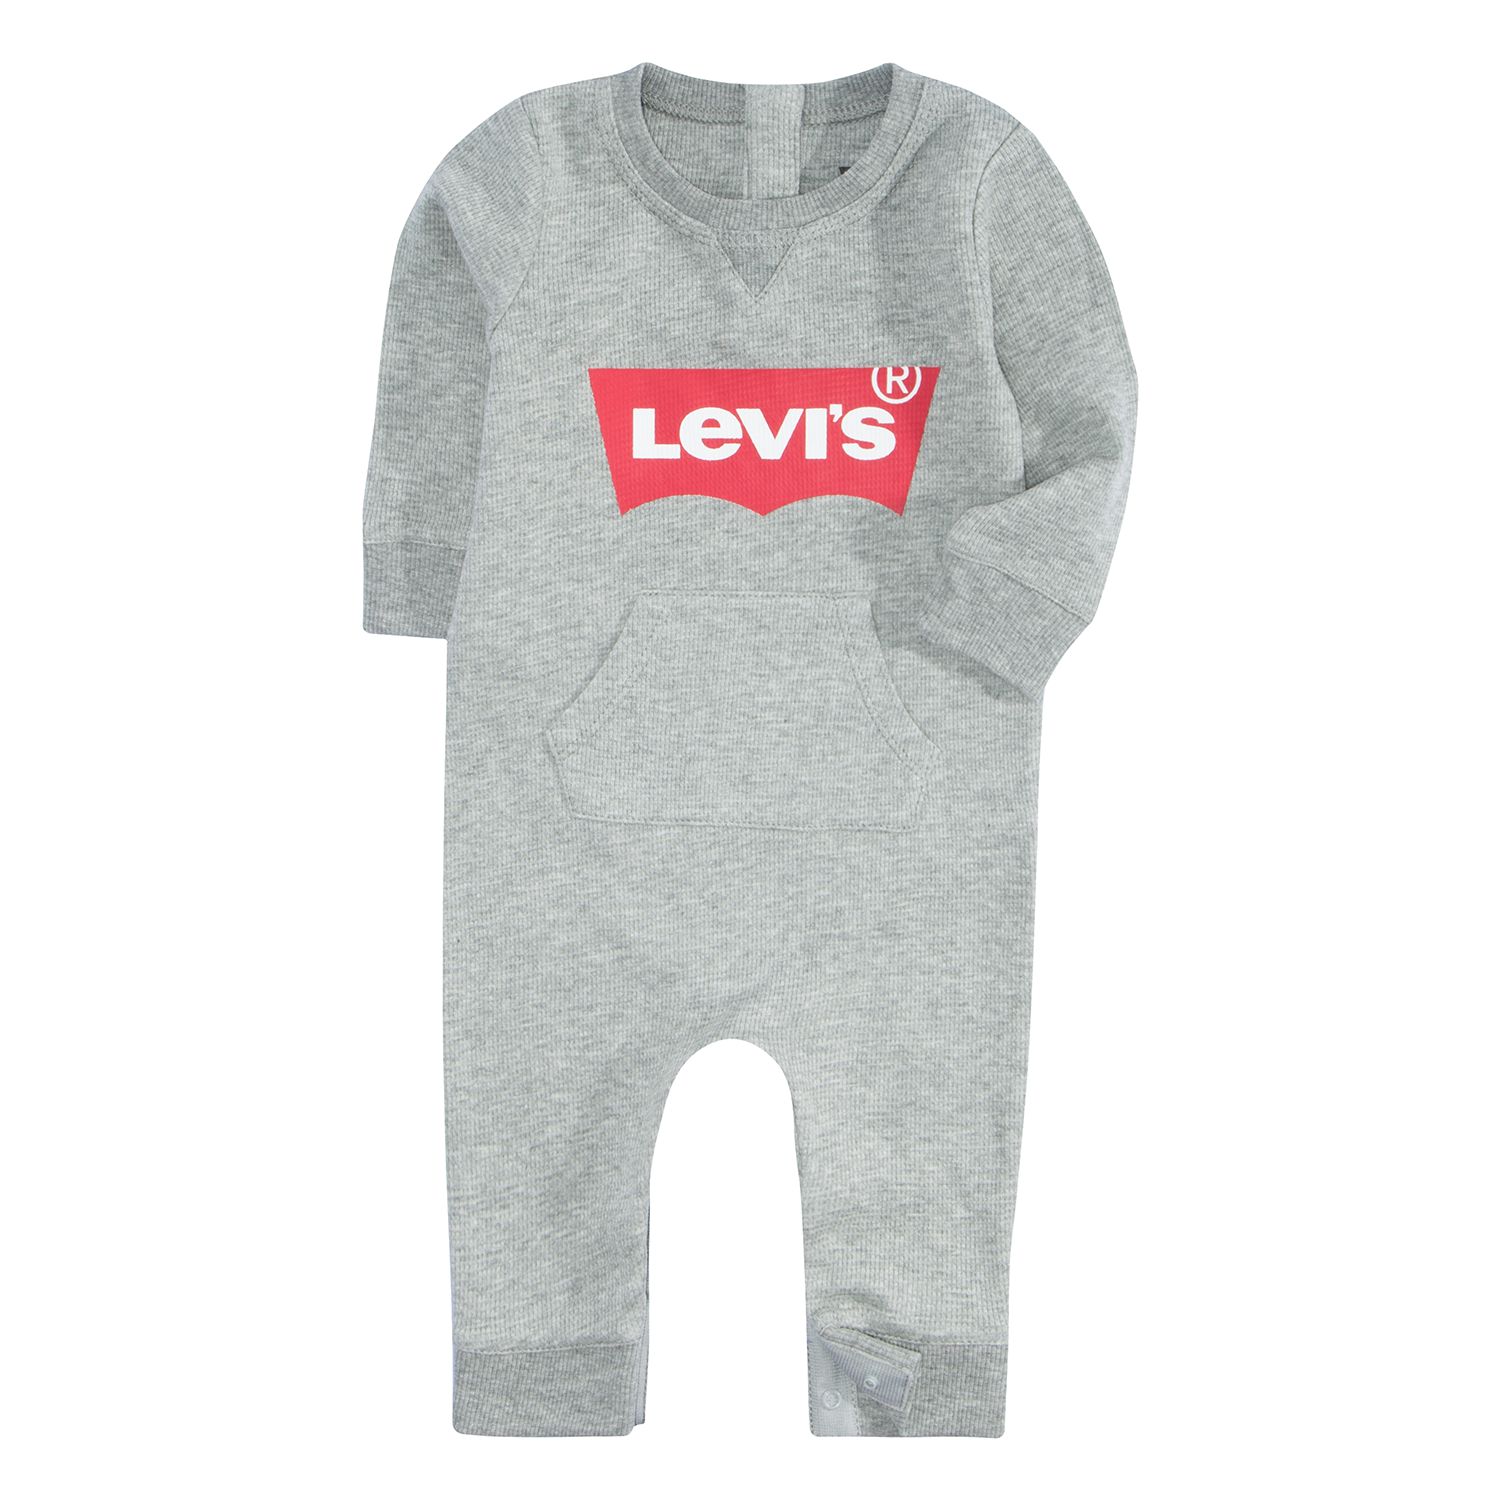 levi's baby overalls